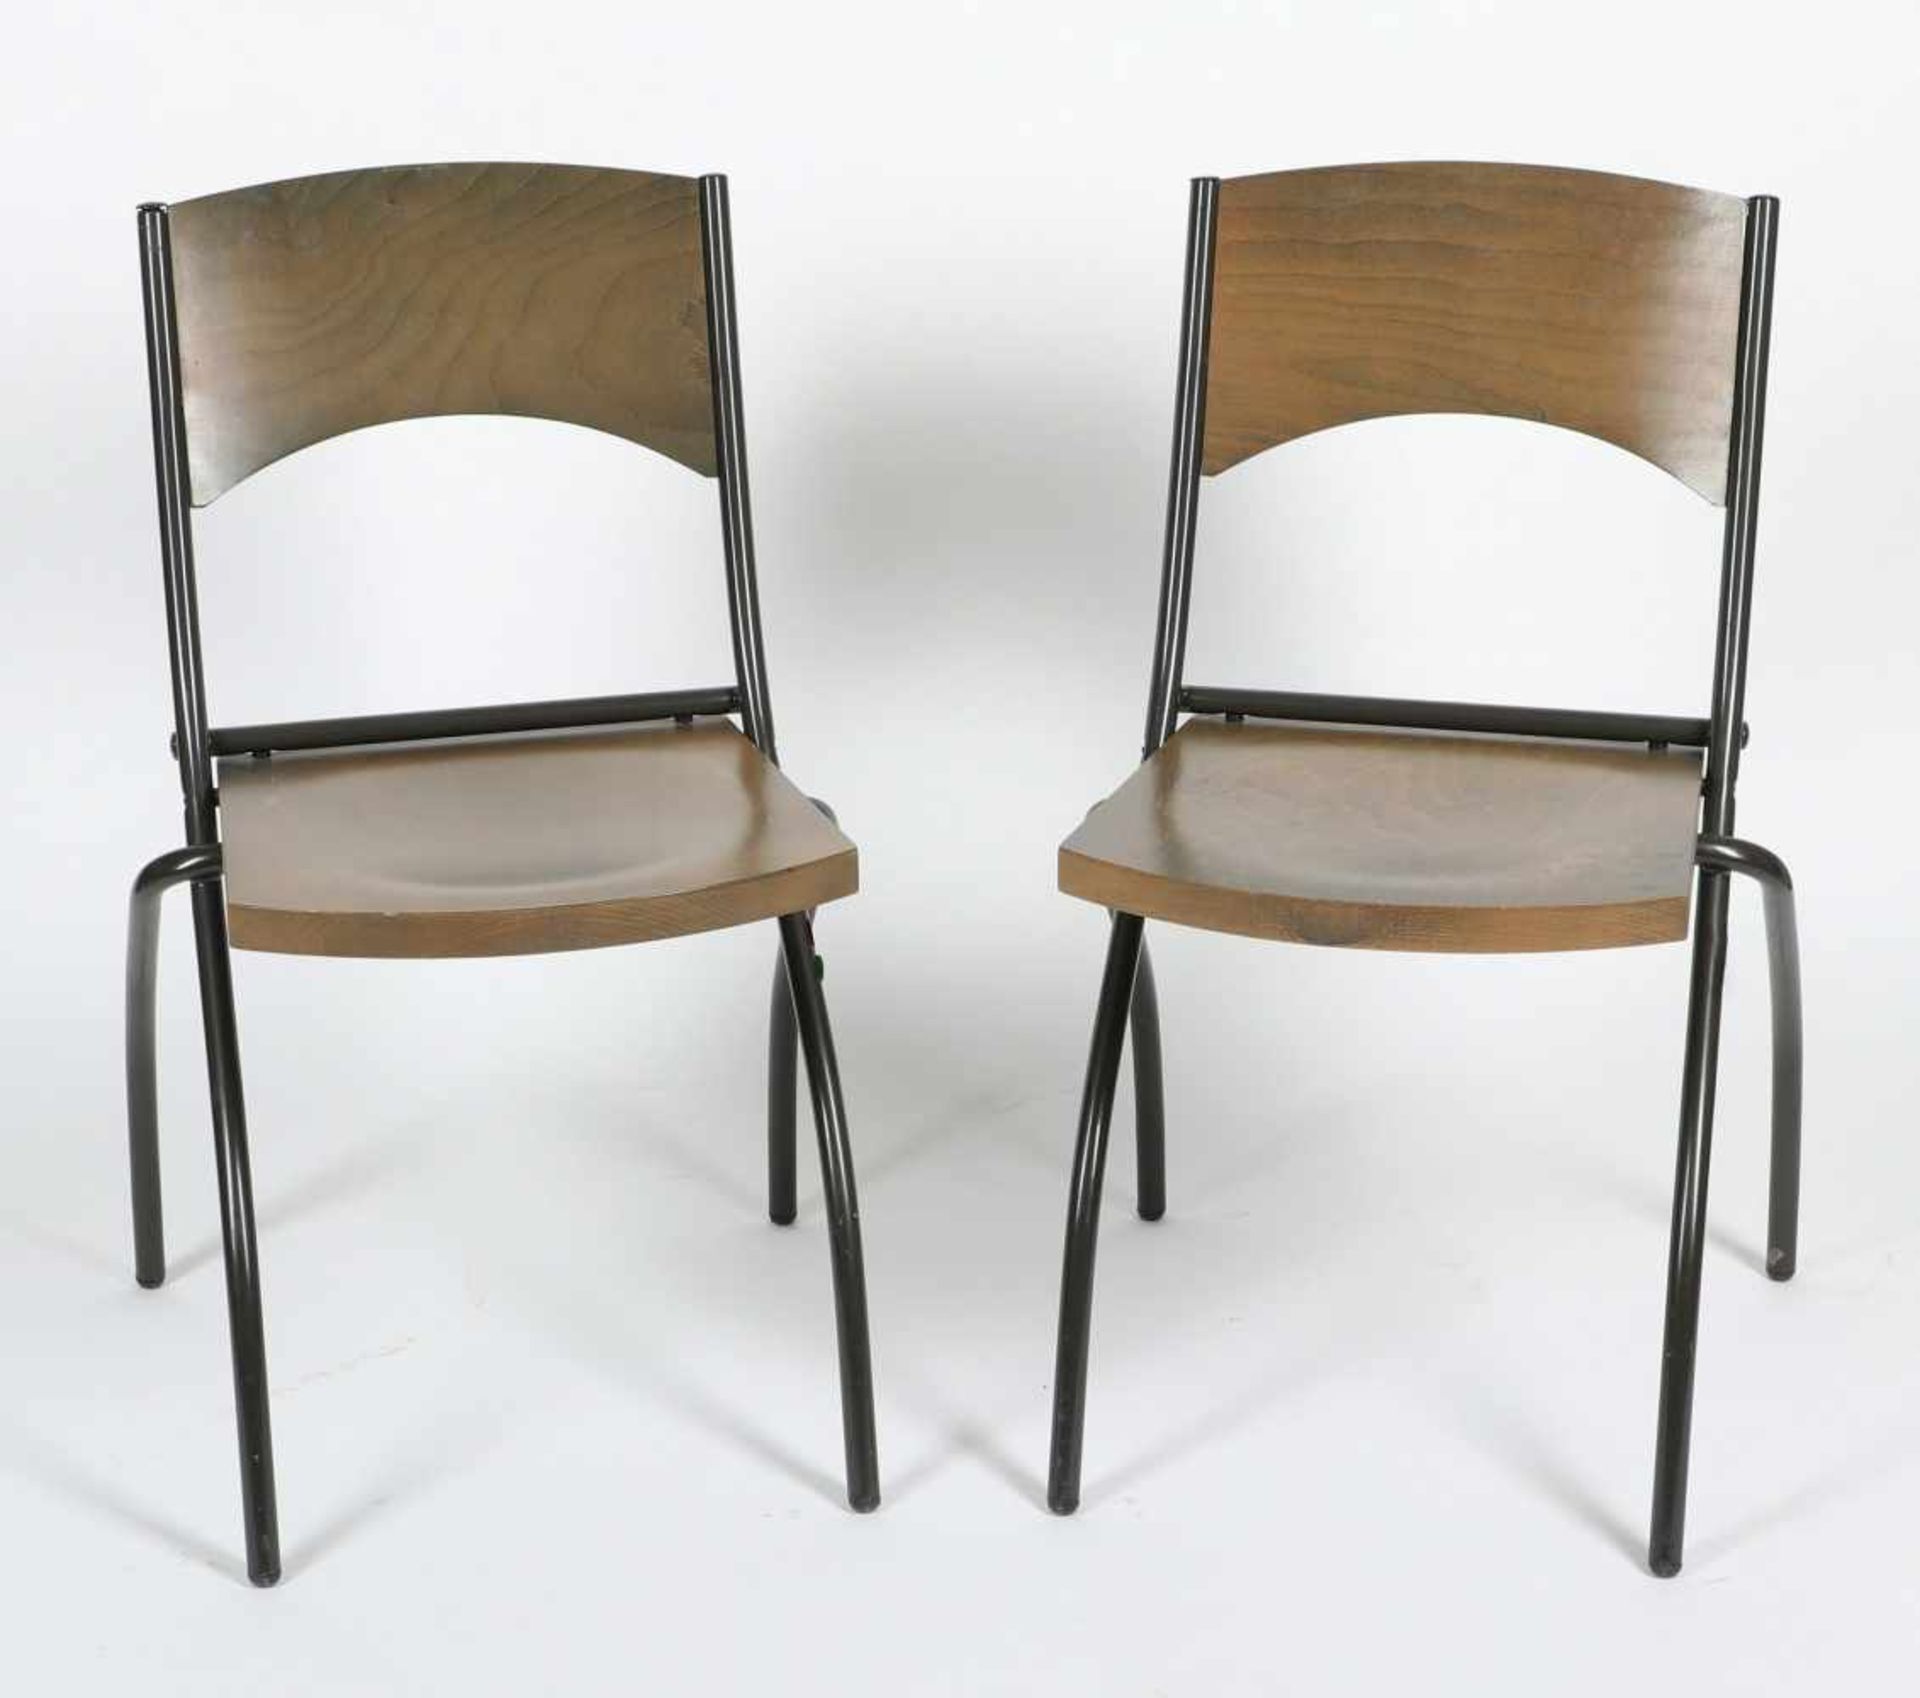 Zwei Stühle mit KlappsitzenFlyline, Metall und Schichtholz, H = 77 cm, Gebrauchsspuren <br